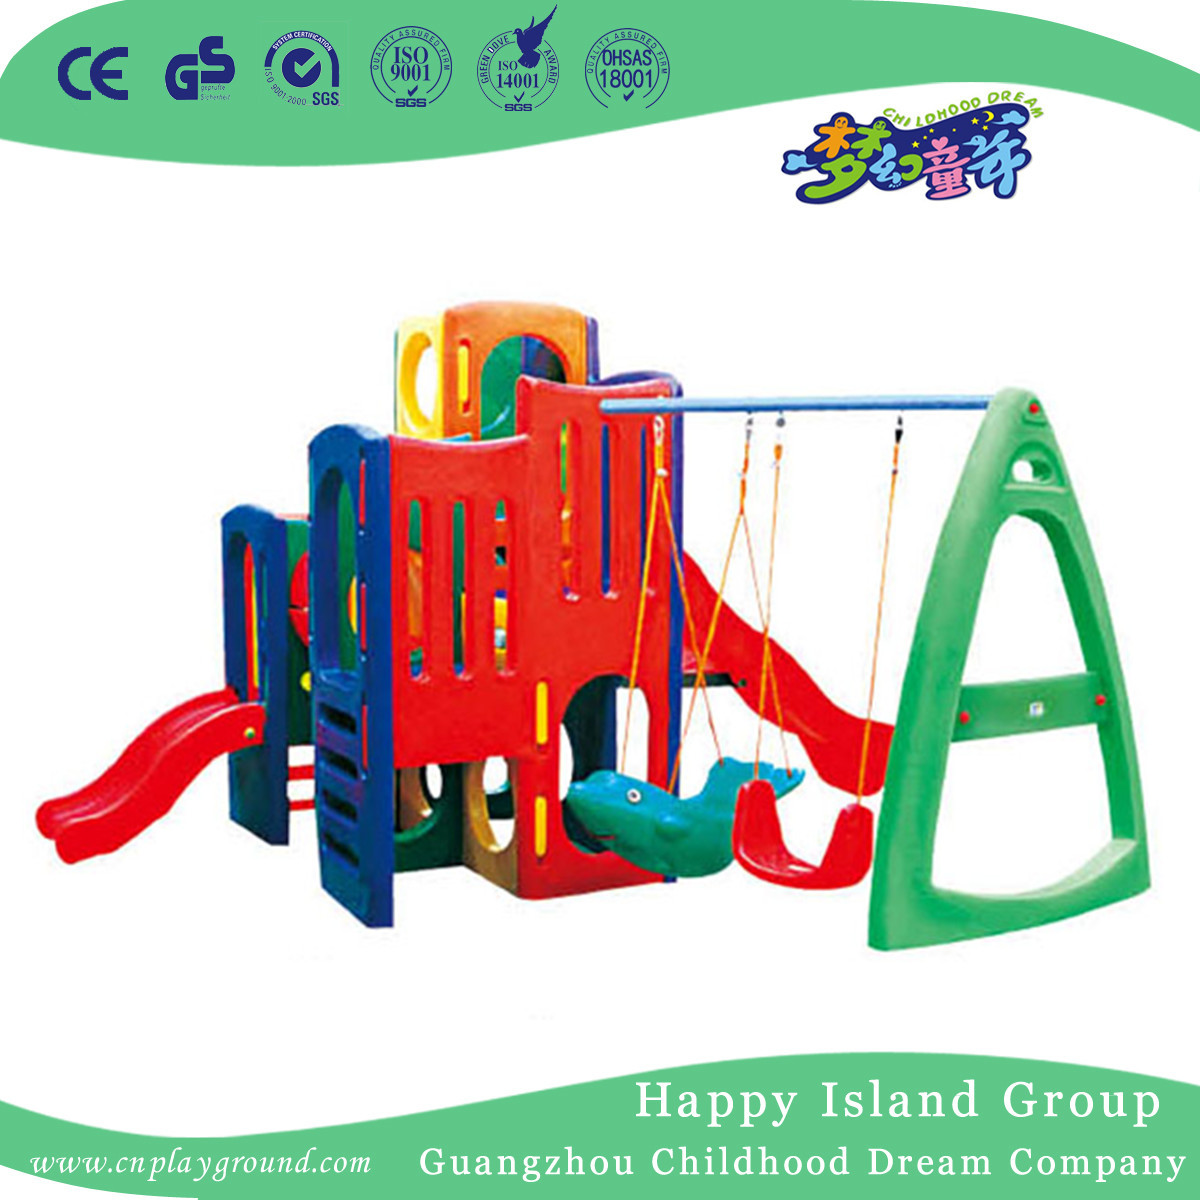  儿童小型塑料秋千滑梯组合(M11-09105)